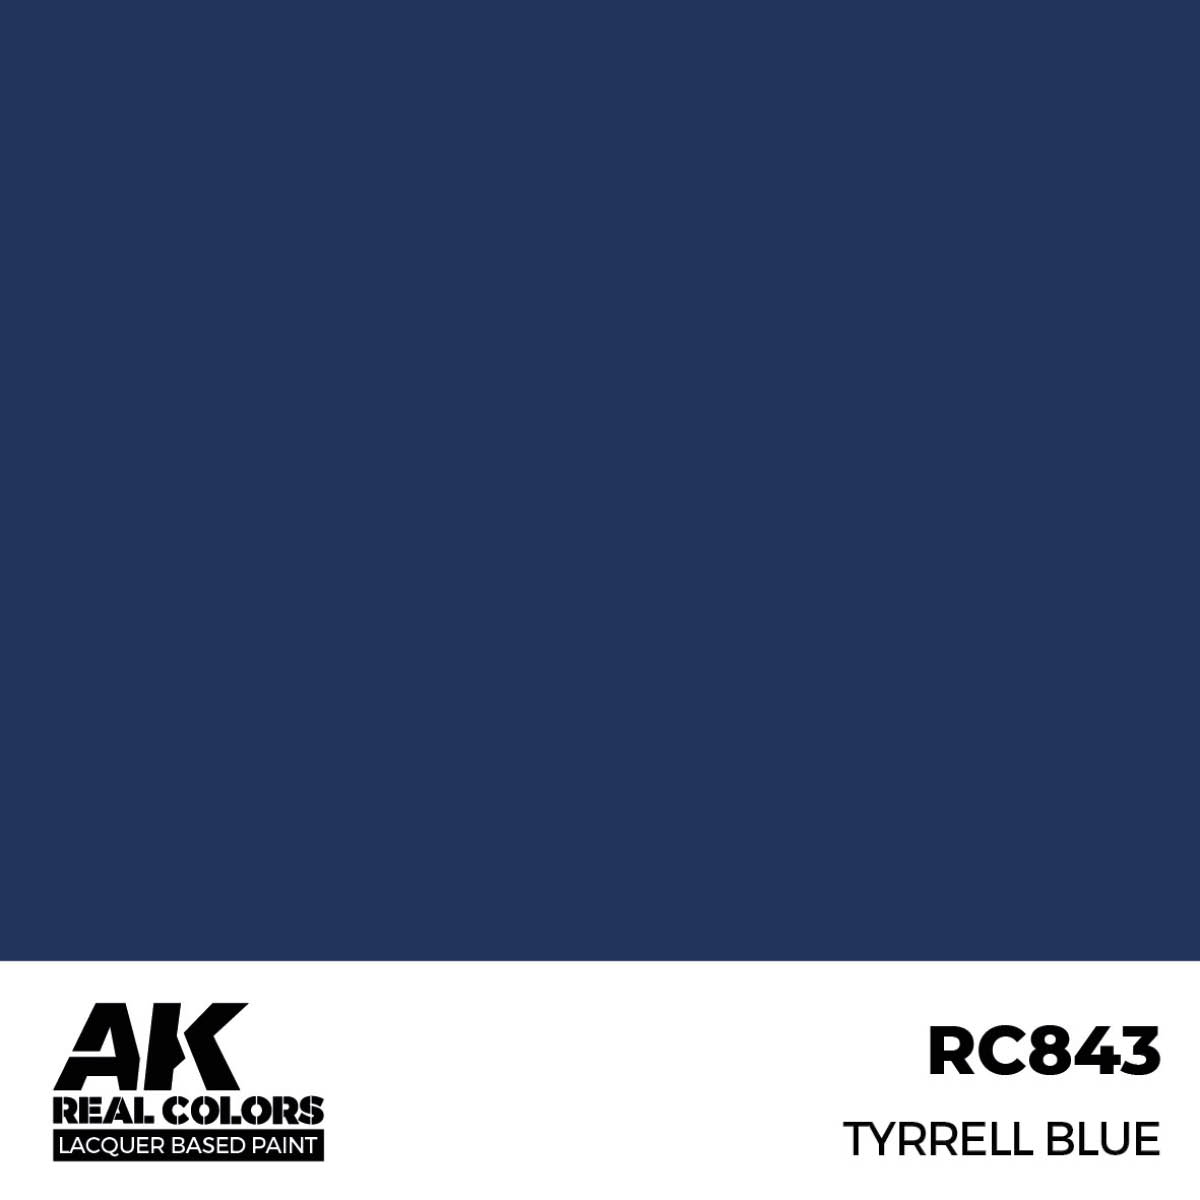 Tyrrell Blue